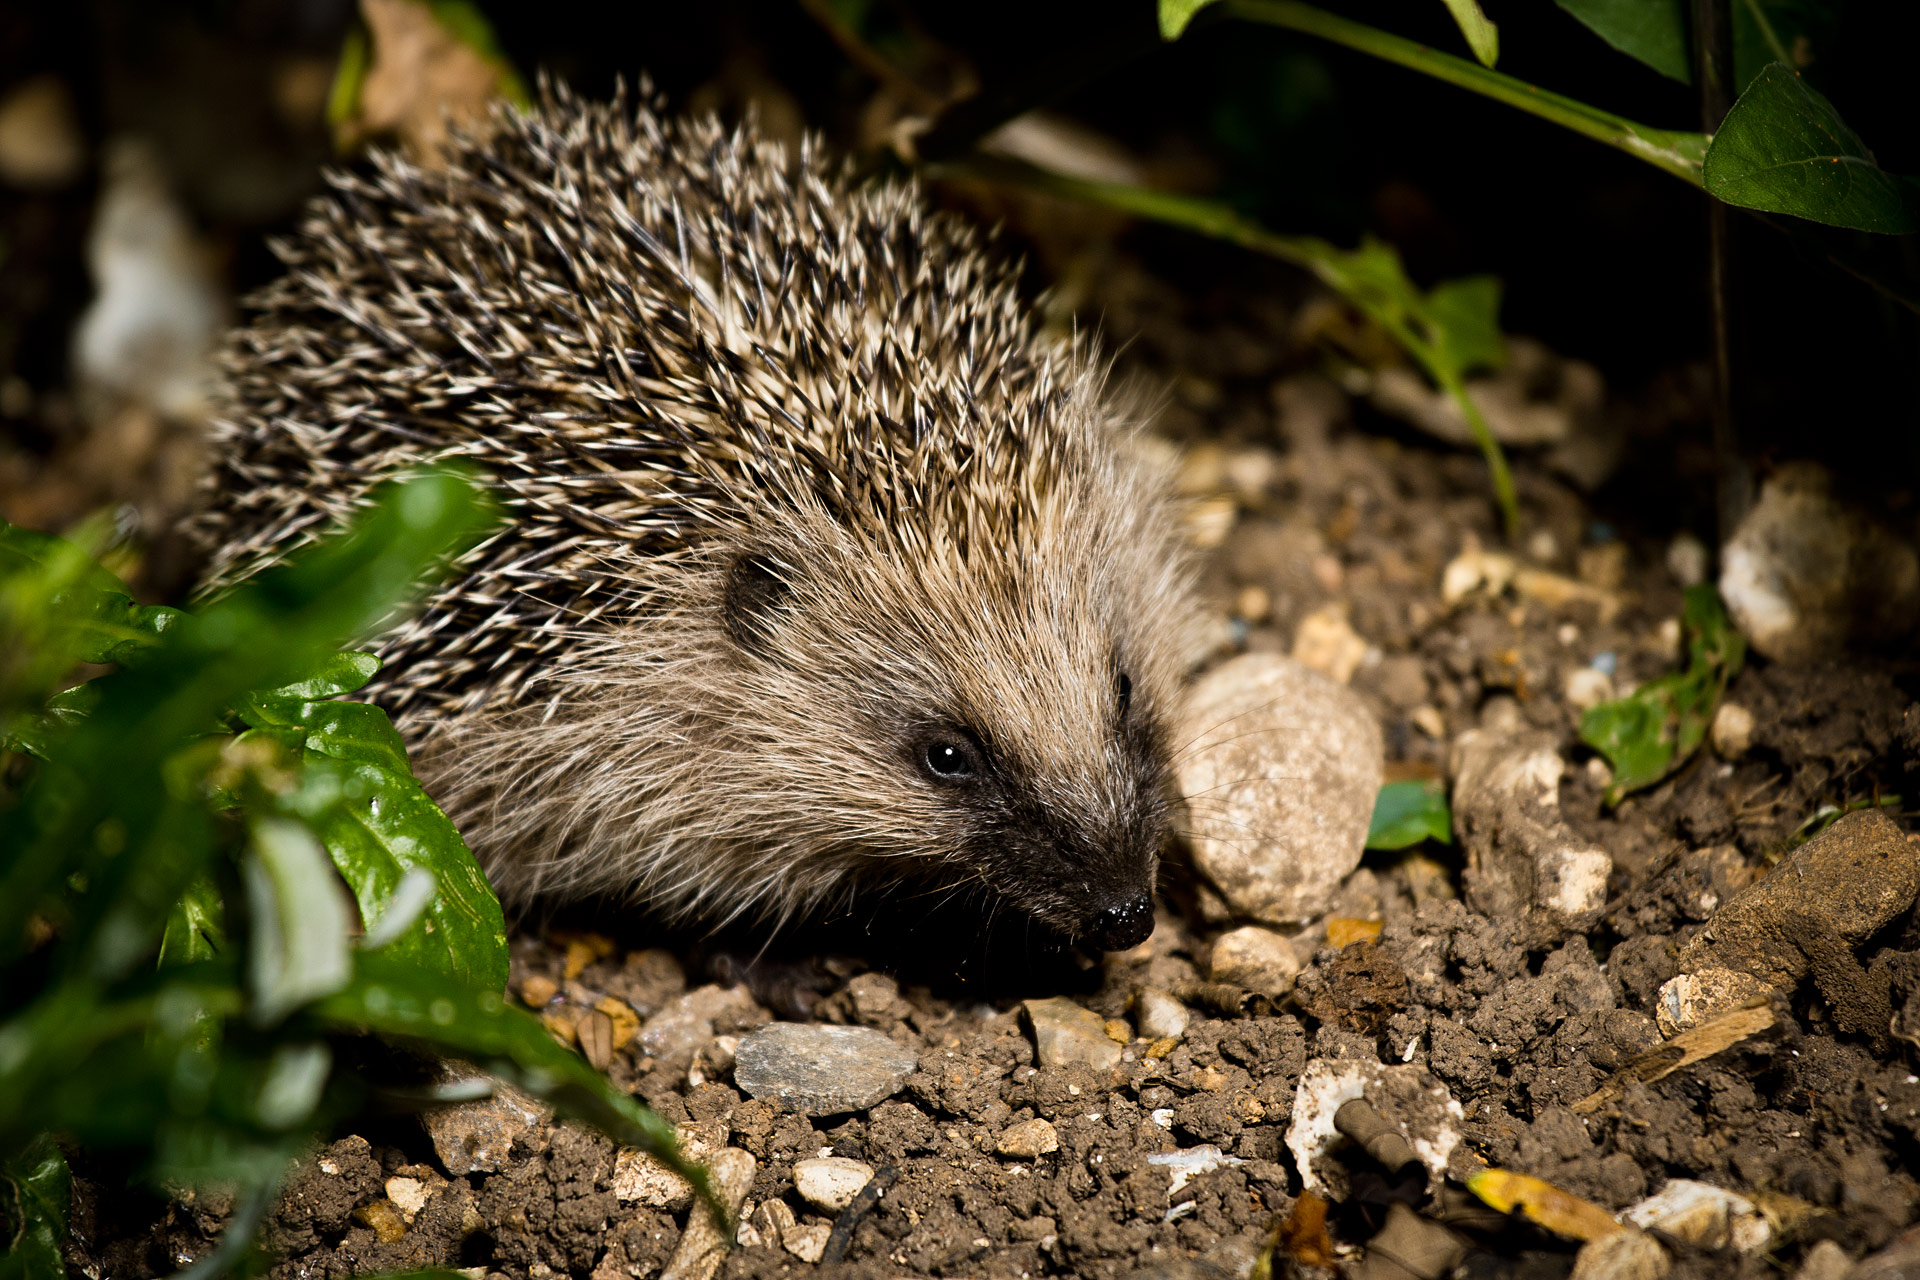 Hedgehog by flash